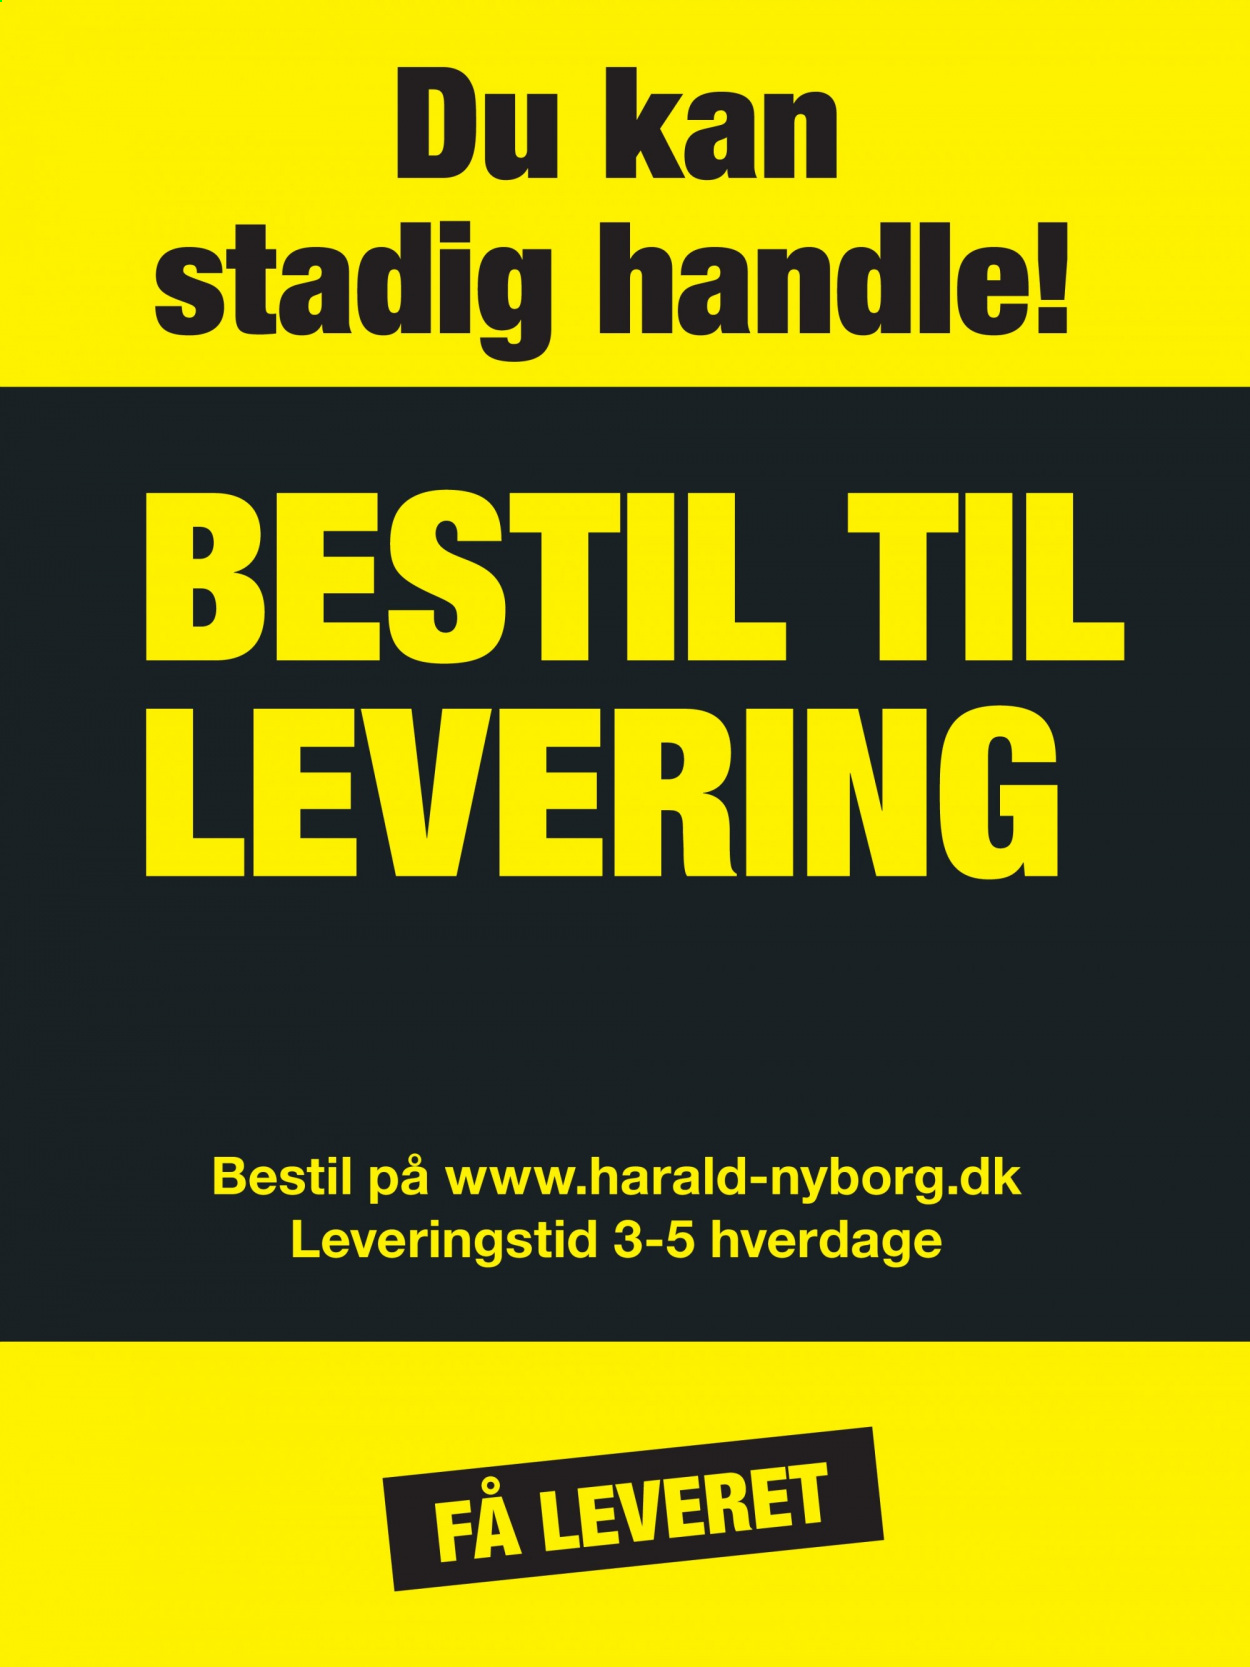 Harald Nyborg tilbudsavis  - 14.01.2021 - 20.01.2021. Side 3.